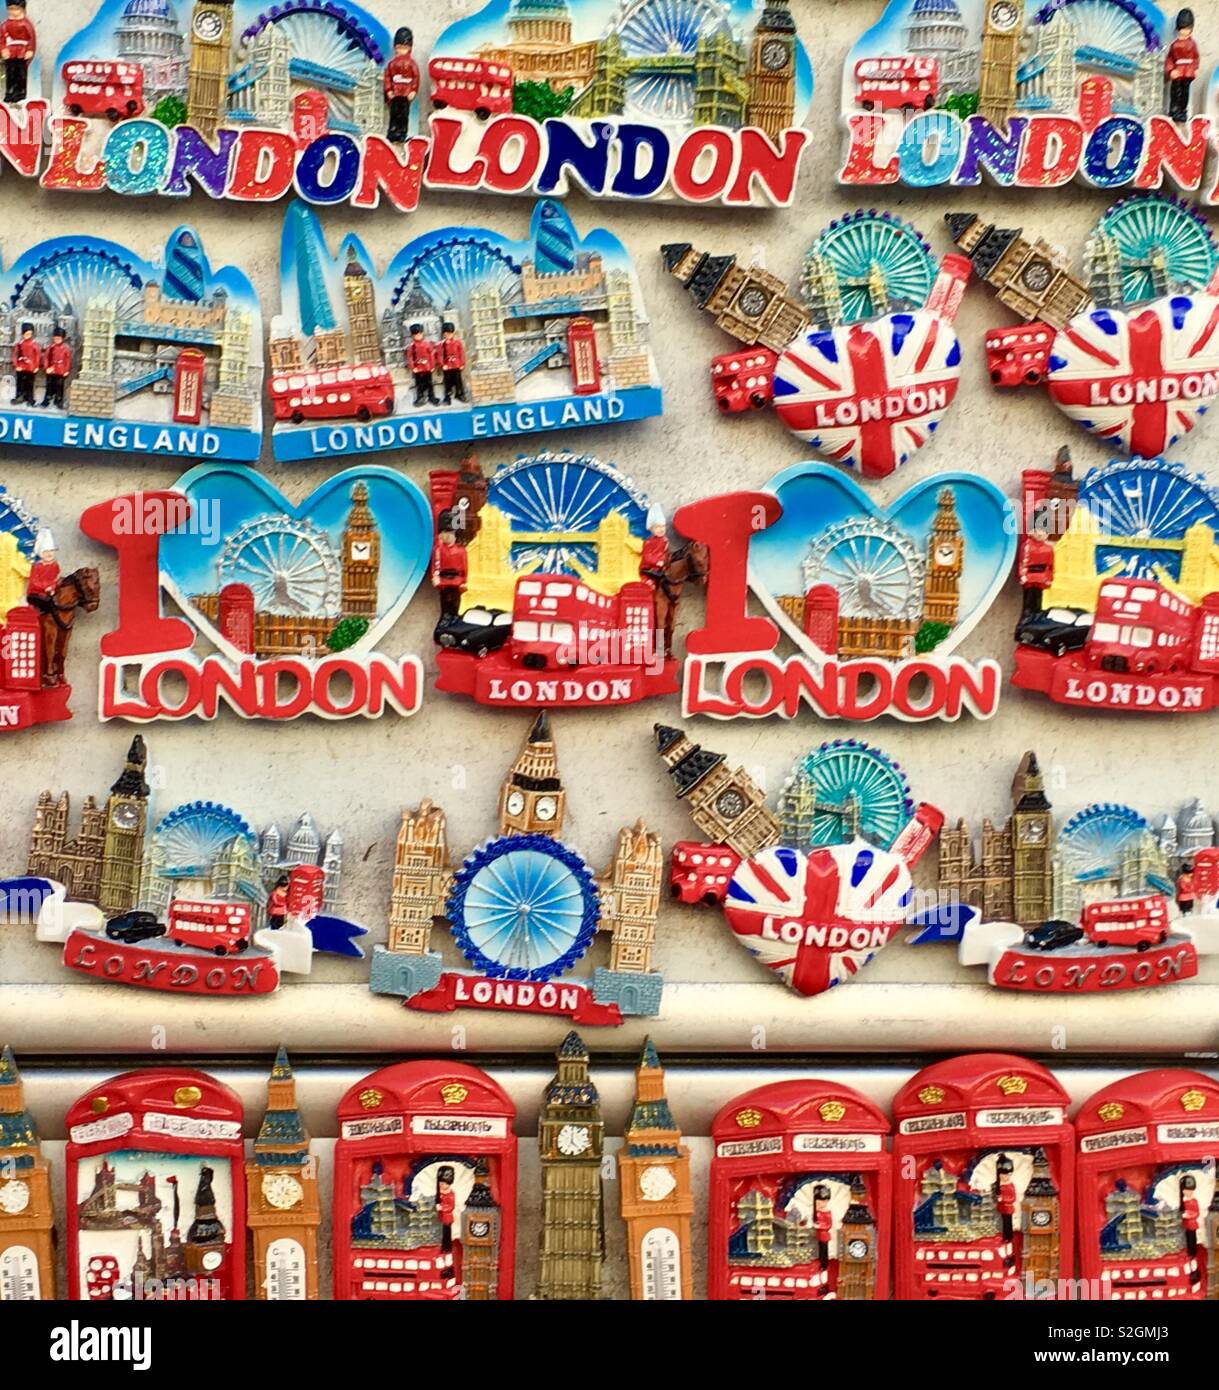 Magneti per Frigorifero Calamite da Frigo Viaggio Fridge Magnet Sticker Souvenir del Regno Unito Londra Big Ben Tower Bridge London Eye 